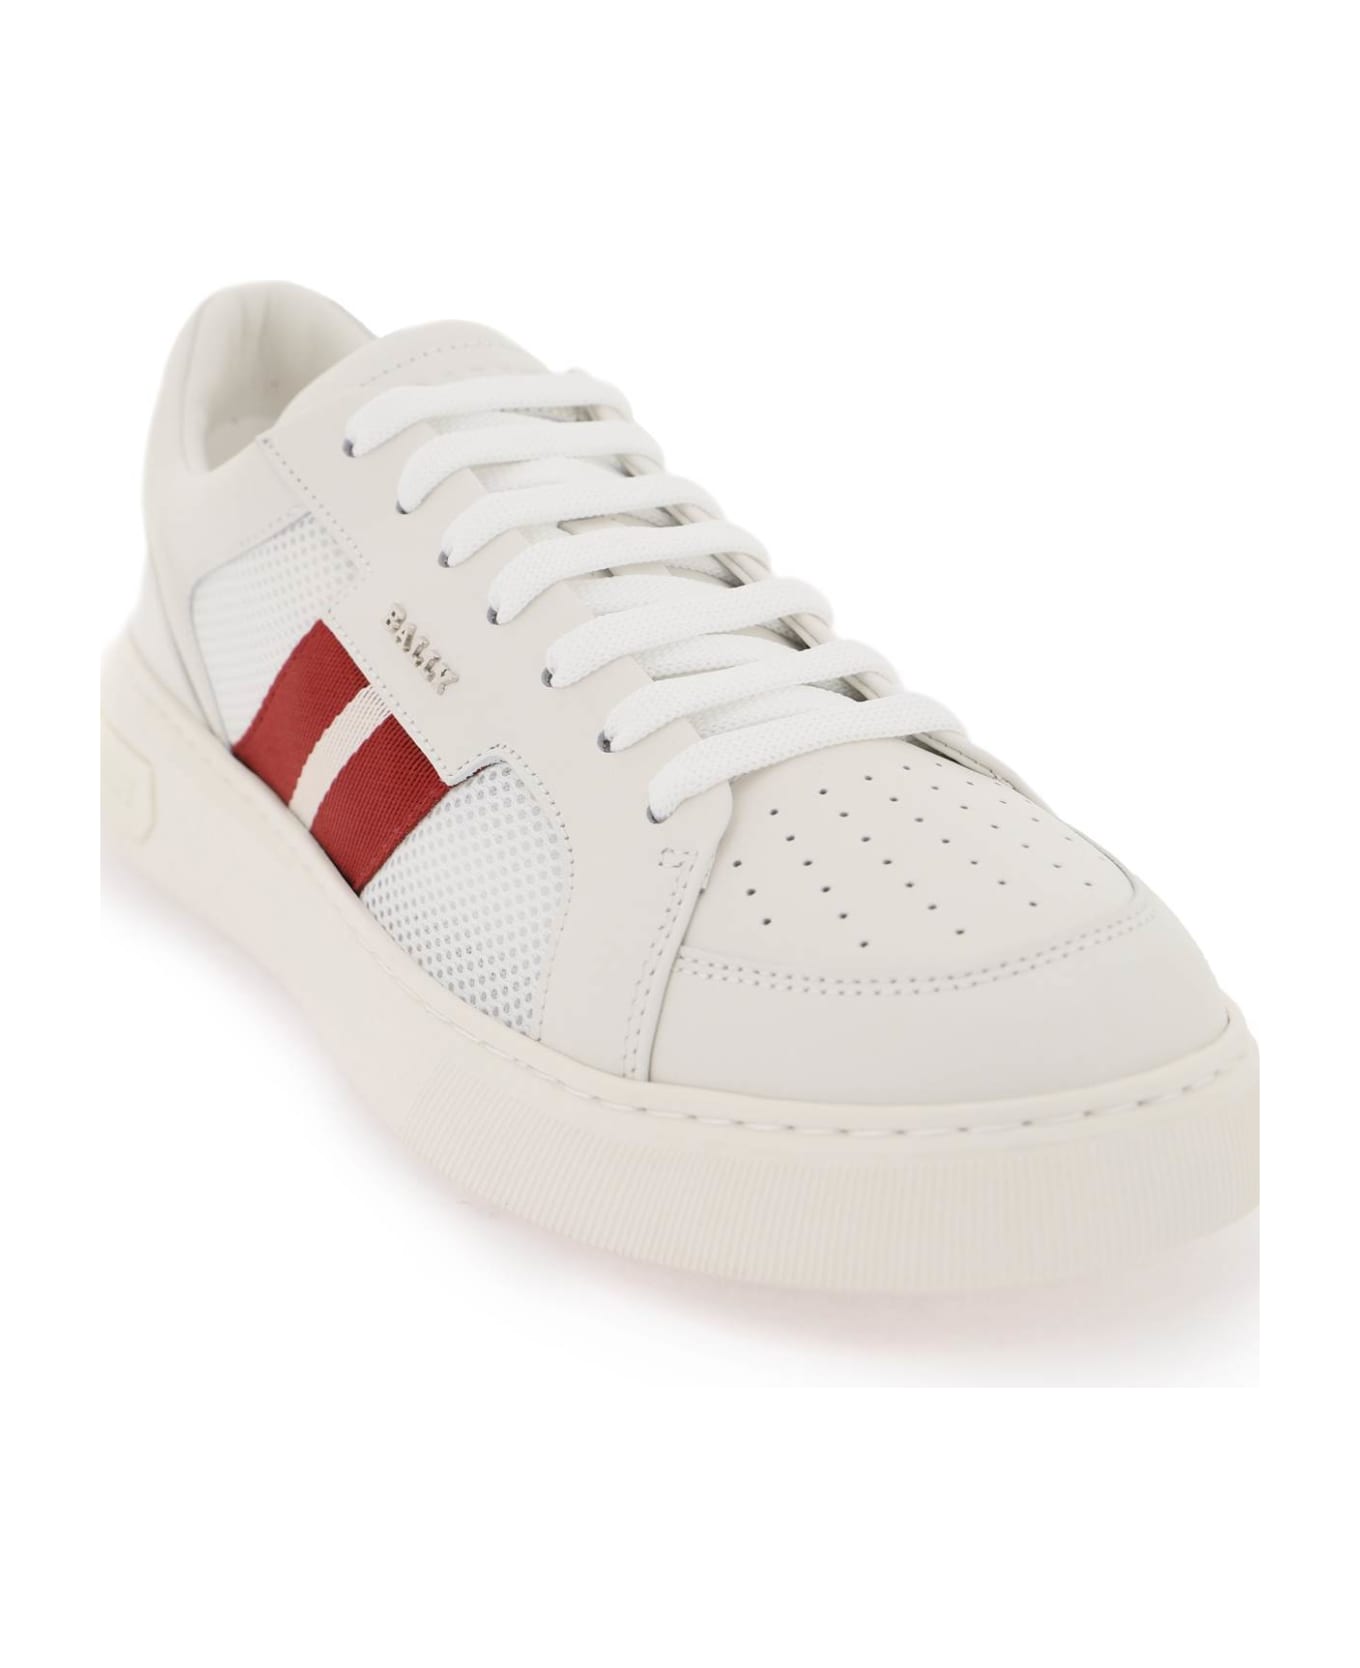 Bally Melys Sneakers - 0300 WHITE (White)